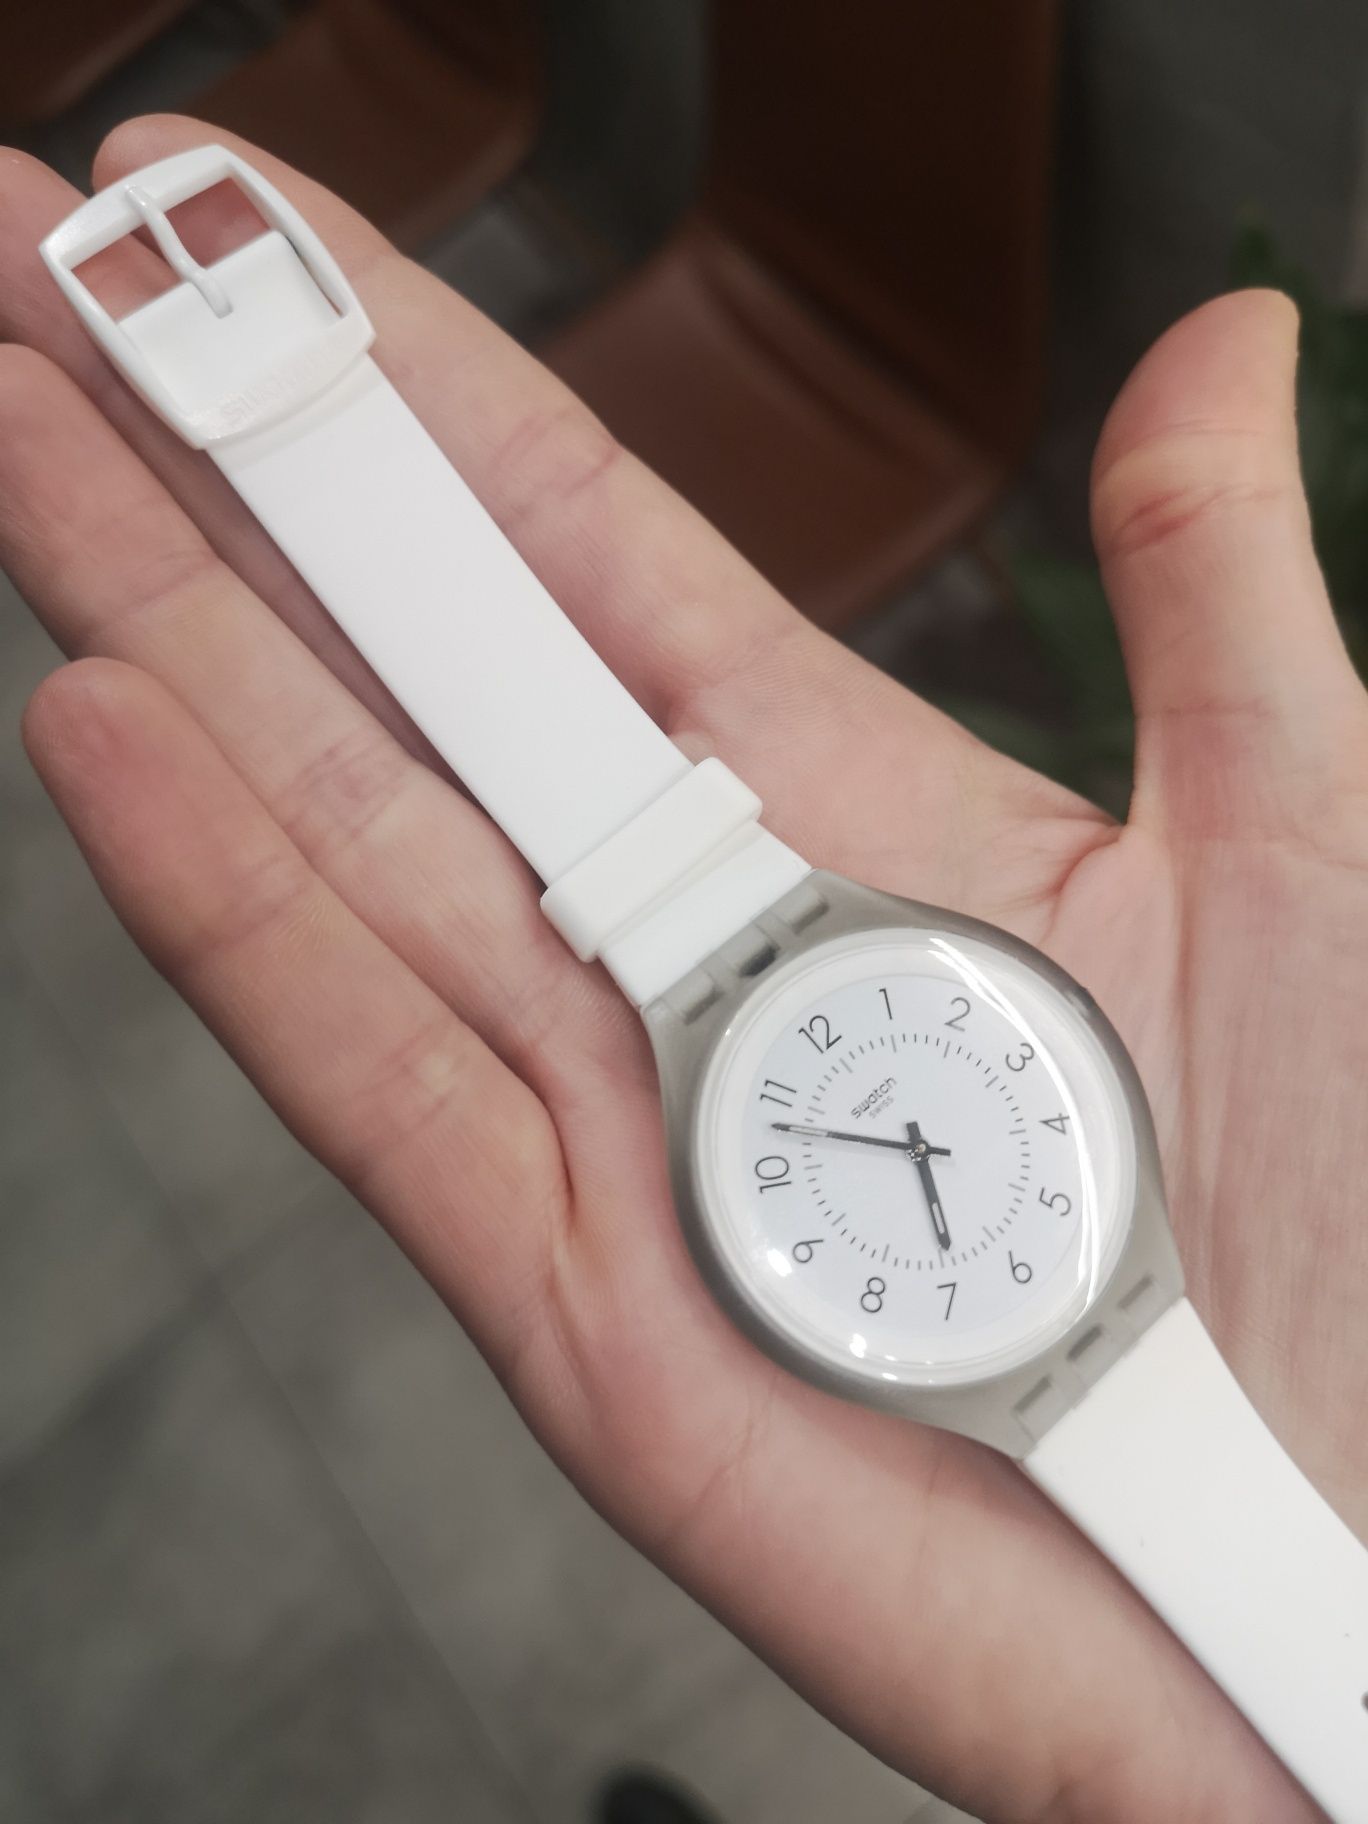 Zegarek swatch skin big biały szary cienki